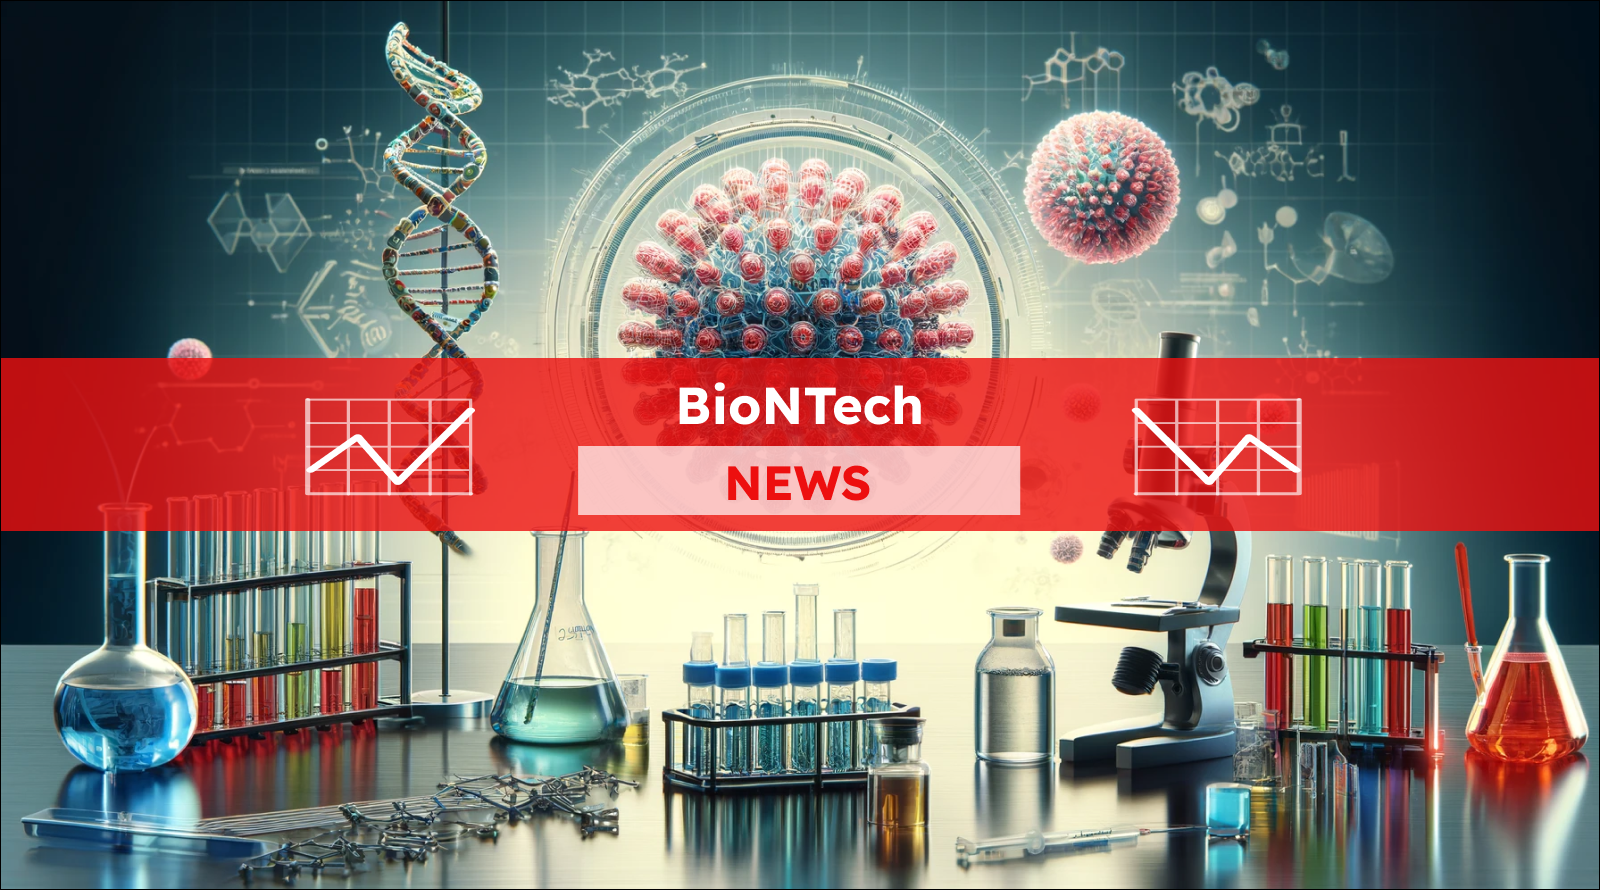 eine DNA-Helix, ein Virusmodell, ein Mikroskop und Reagenzgläser, Symbole für biotechnologische Forschung,  mit einem BioNTech NEWS Banner